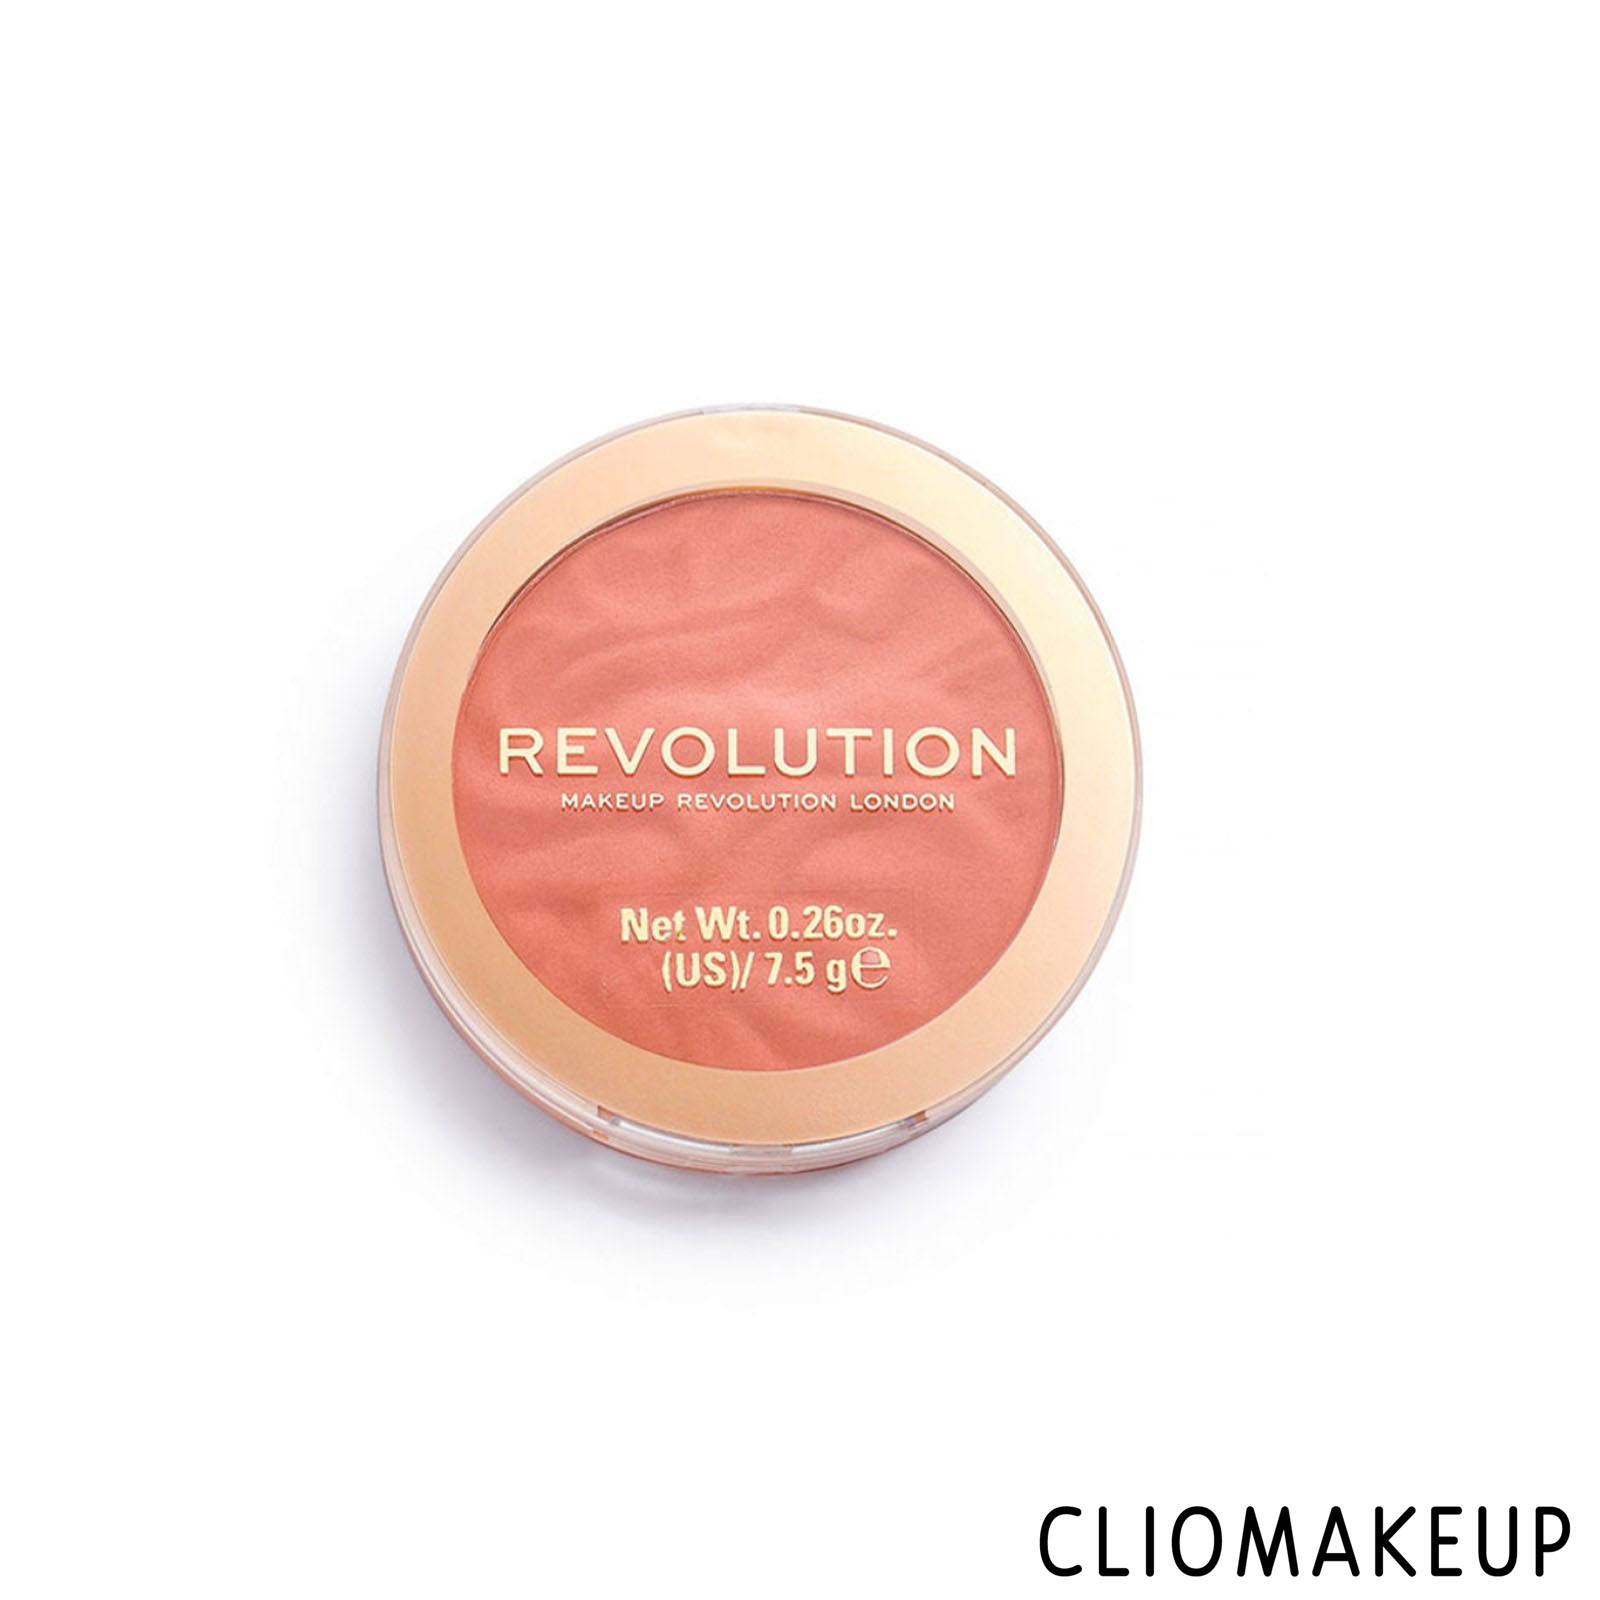 Recensione Blush Makeup Revolution Blusher Reloaded